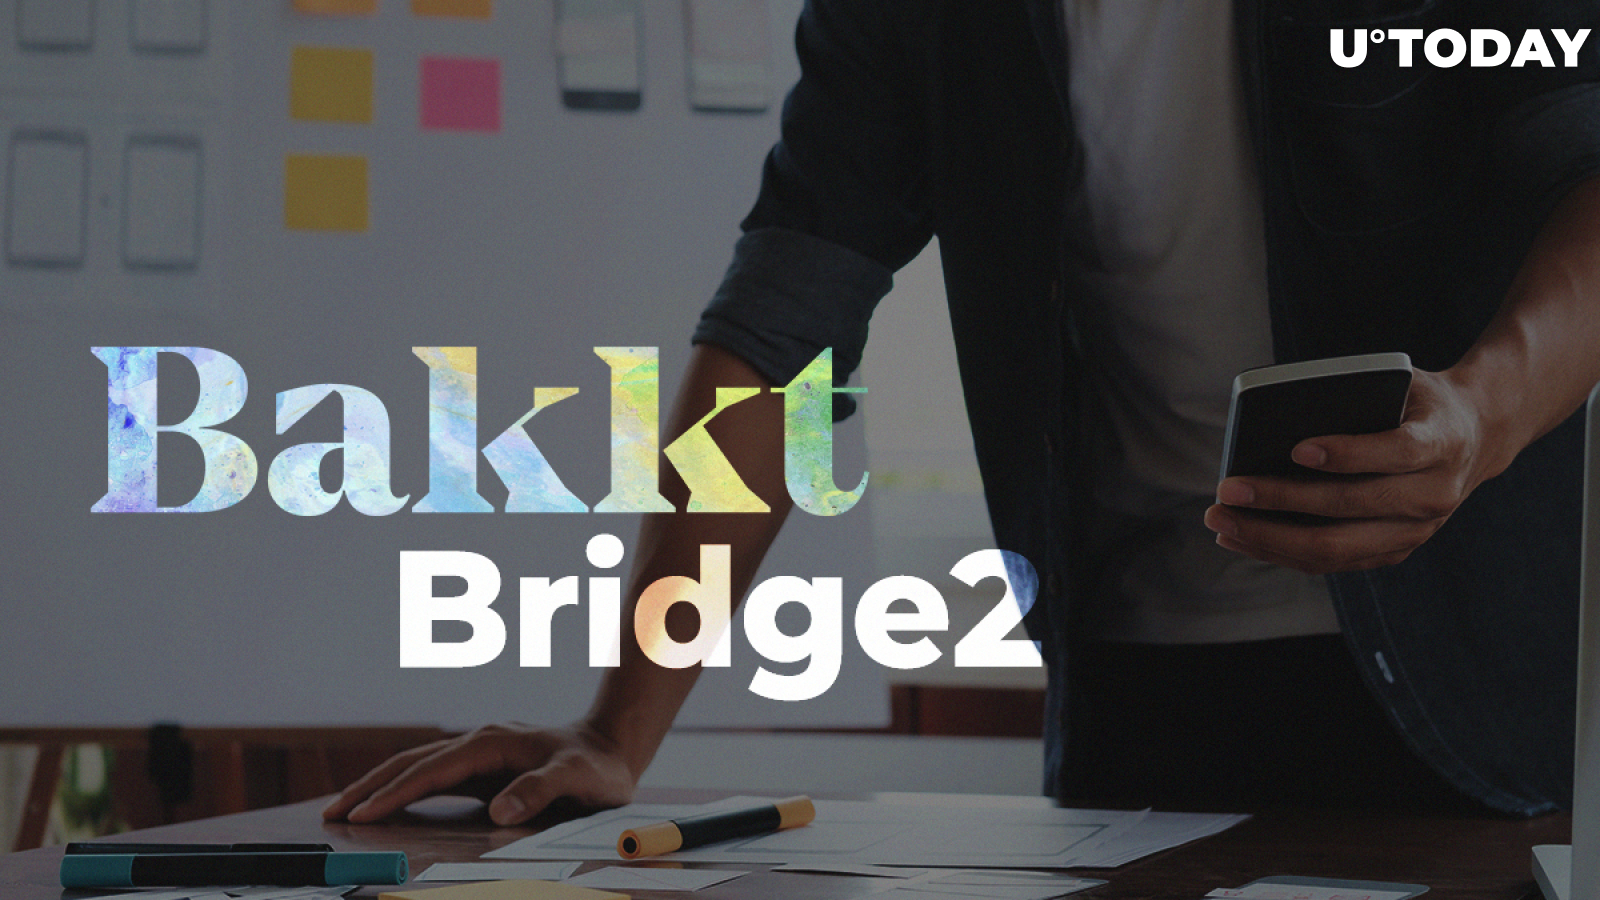 Bakkt to Acquire Bridge2 to Accelerate Development of Its Consumer App